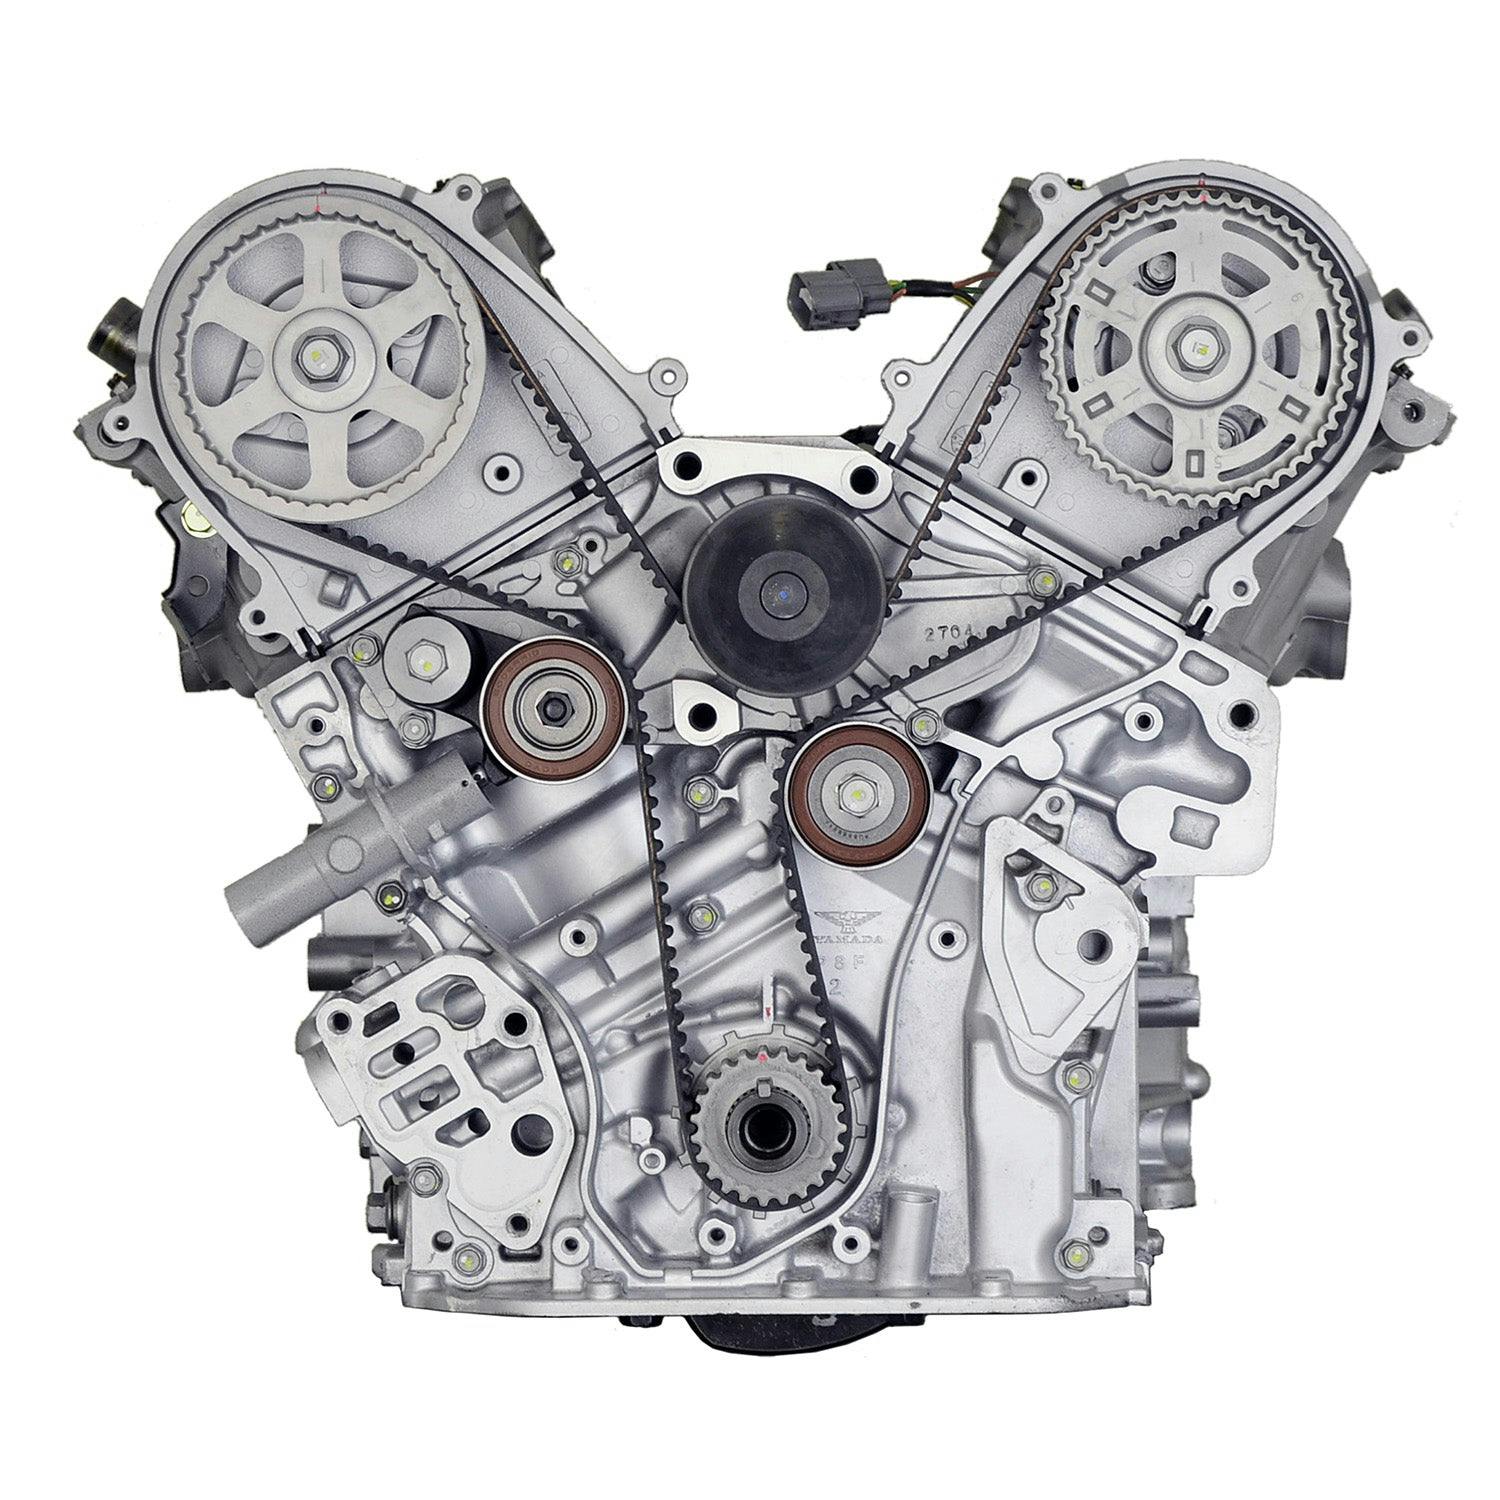 3.5L V6 Engine for 2002-2004 Honda Odyssey